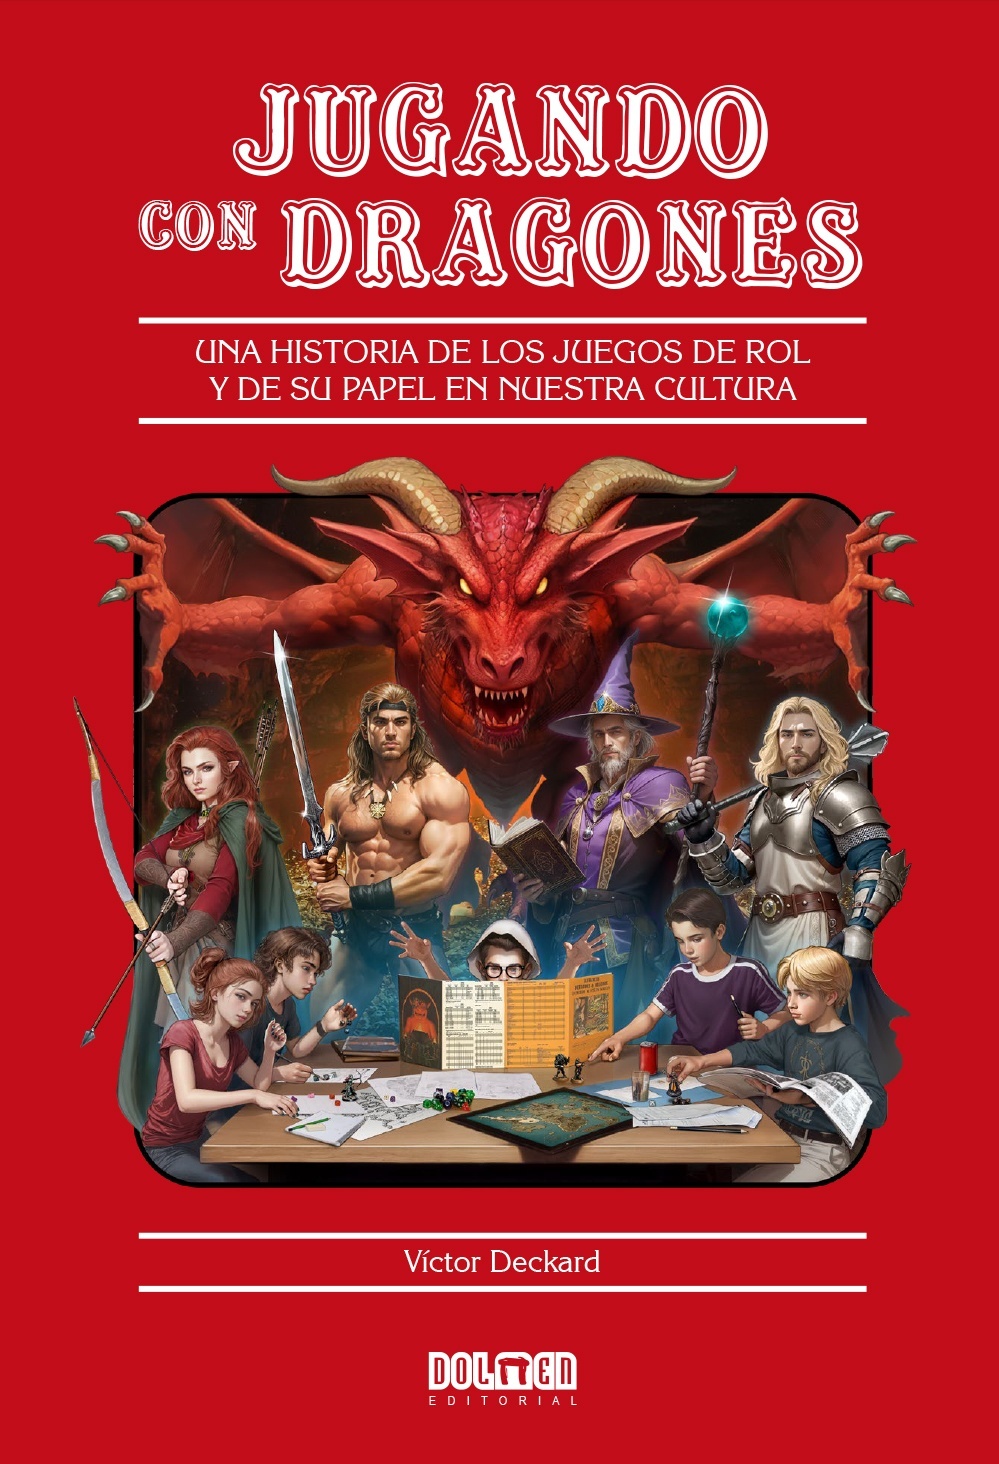 Jugando con dragones "Una historia de los juegos de rol y de su papel en nuestra cultura"